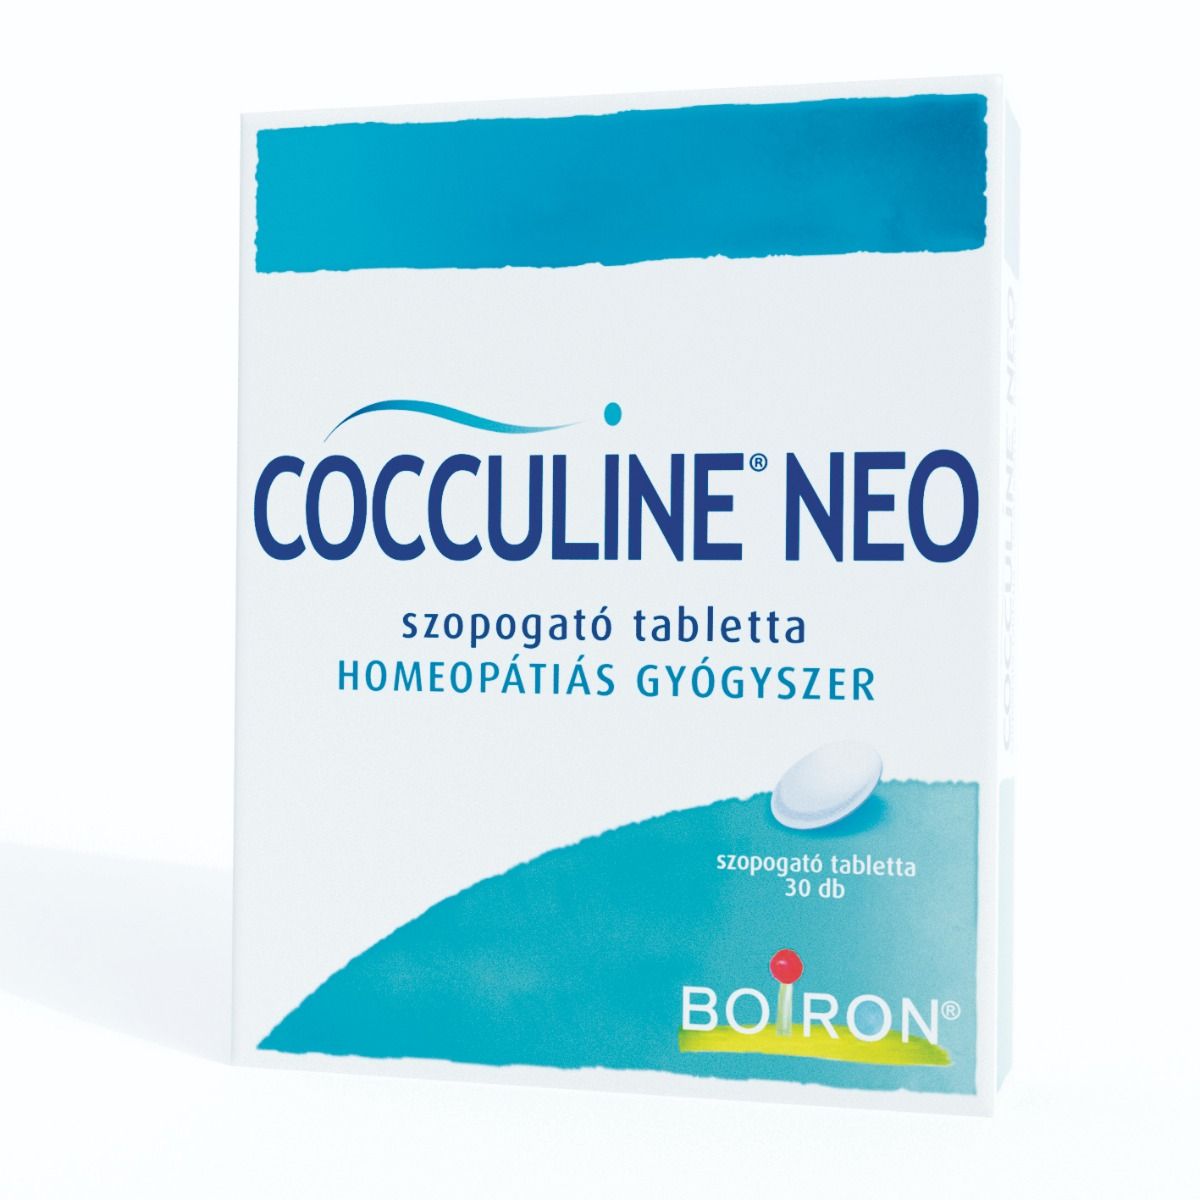 Cocculine NEO bukkális tabletta